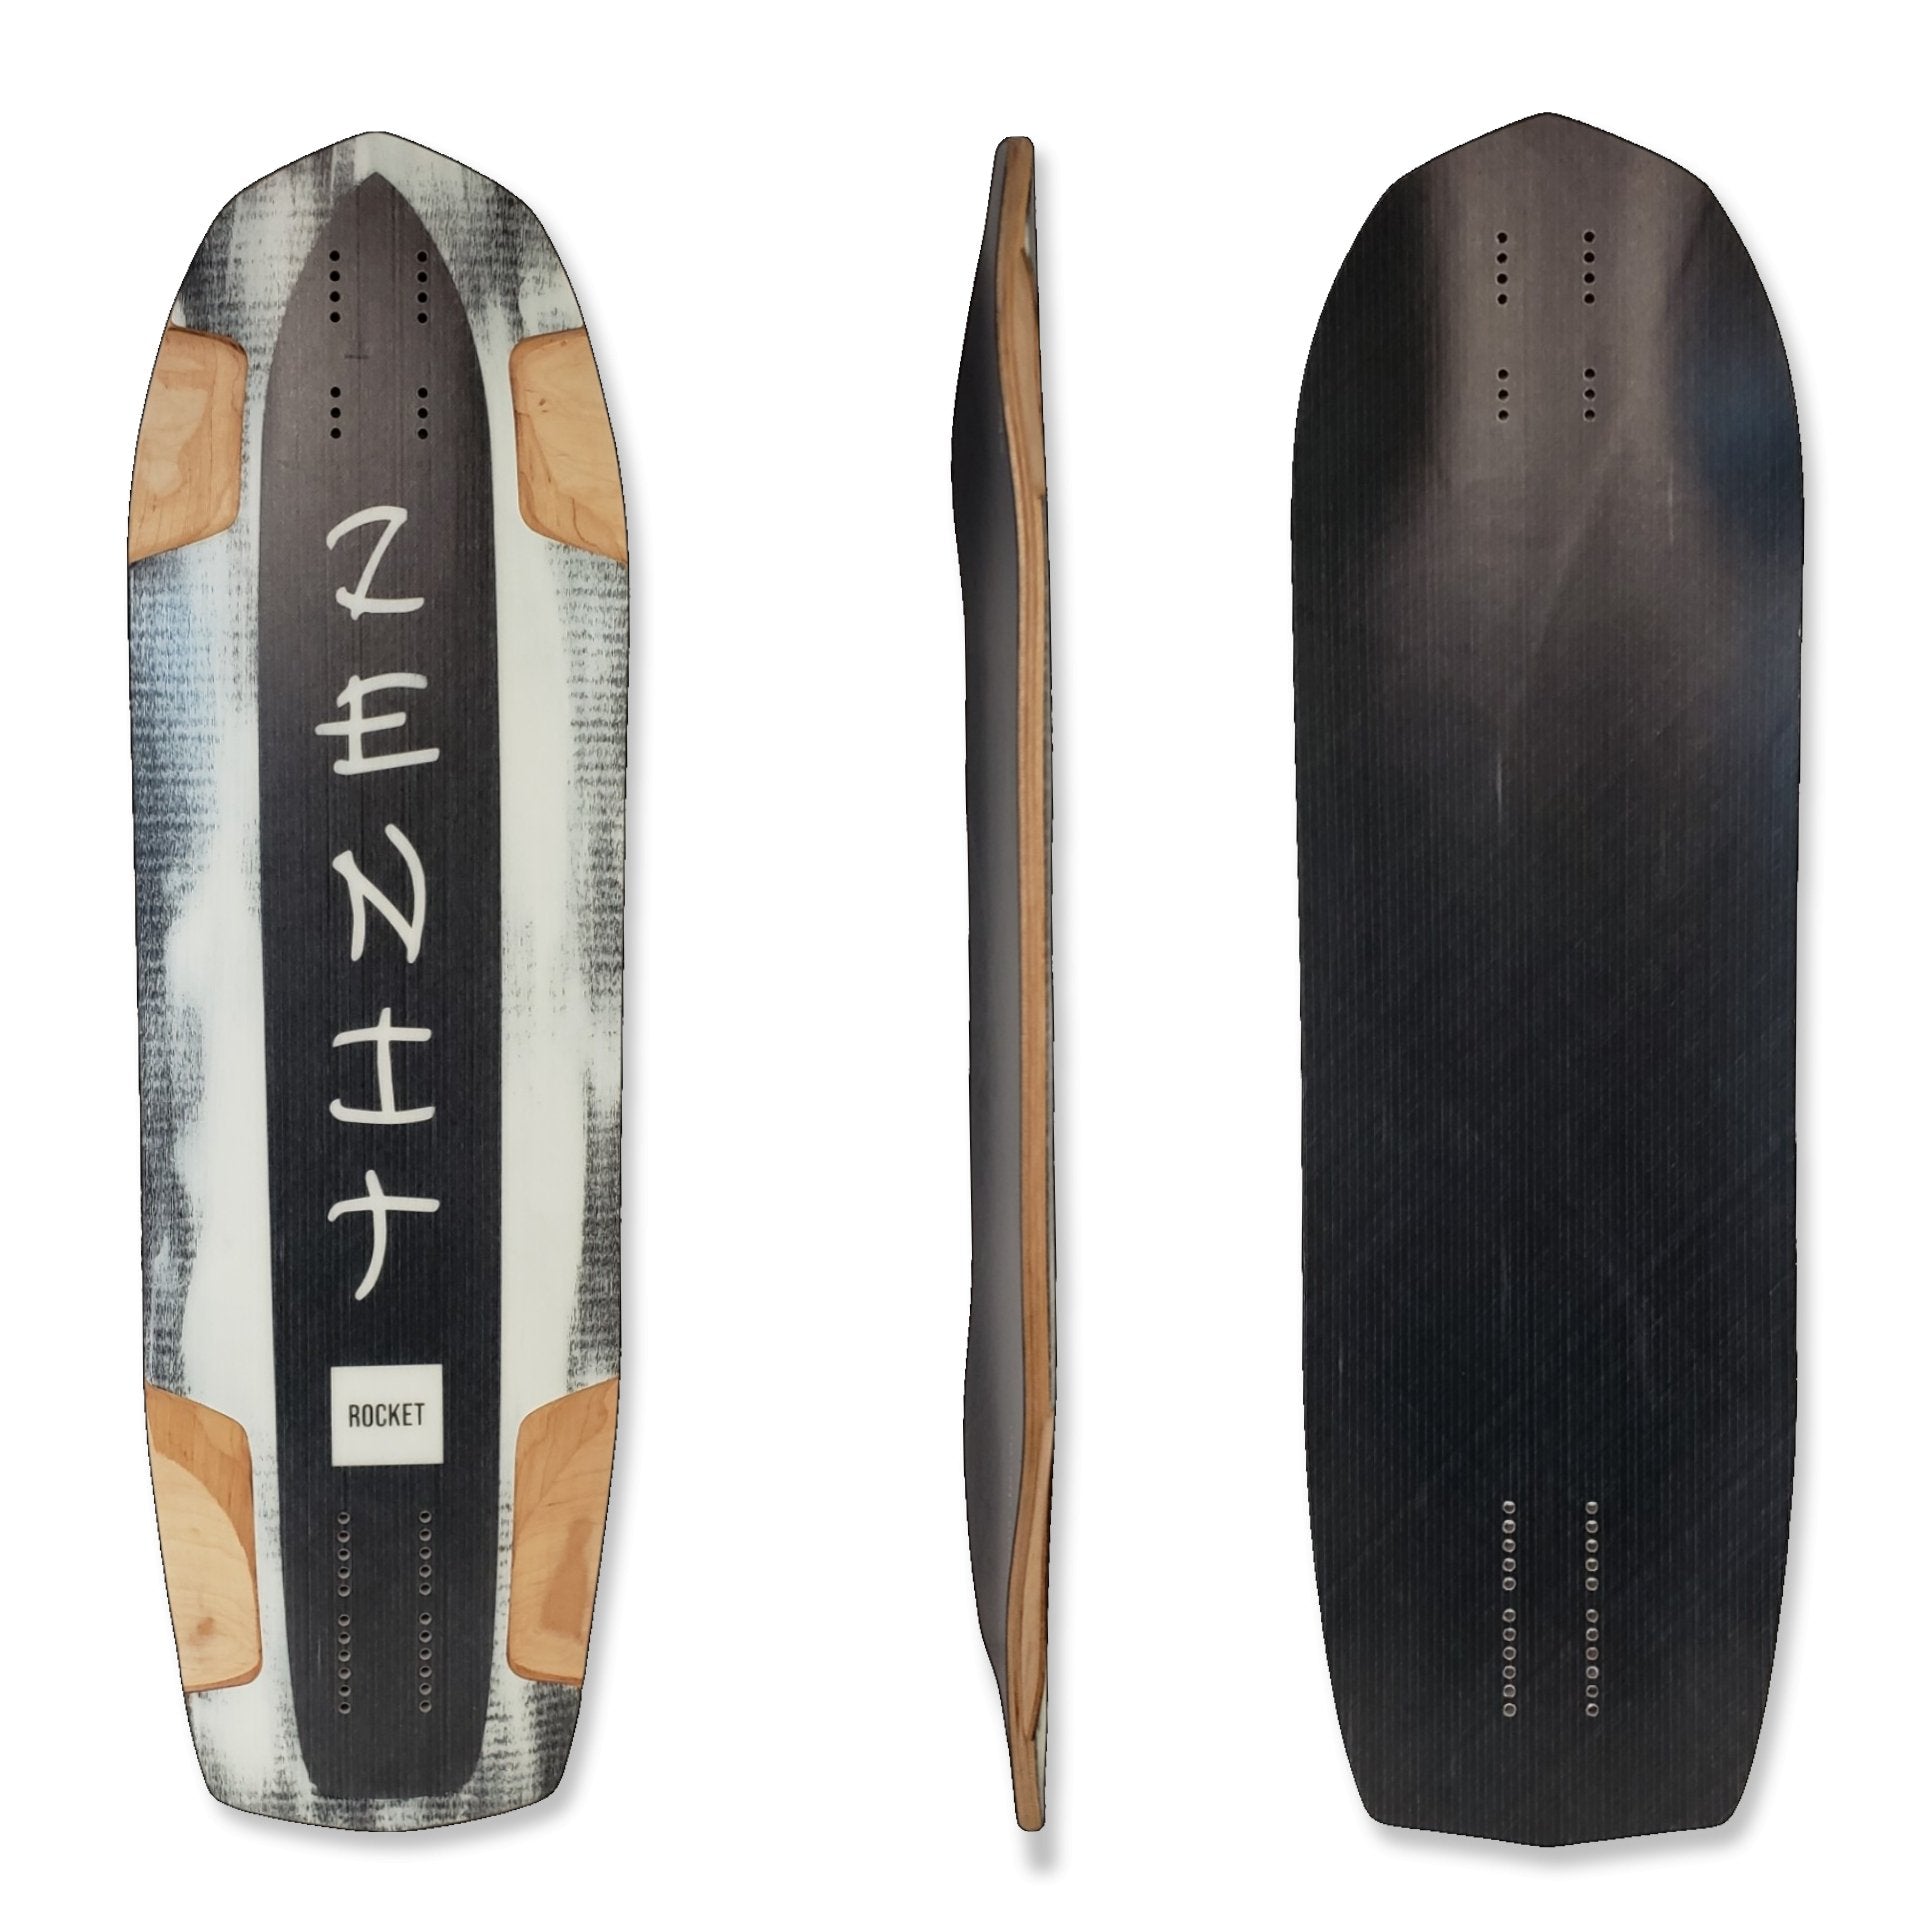 Zenit: Rocket V5 Longboard Skateboard Deck - MUIRSKATE